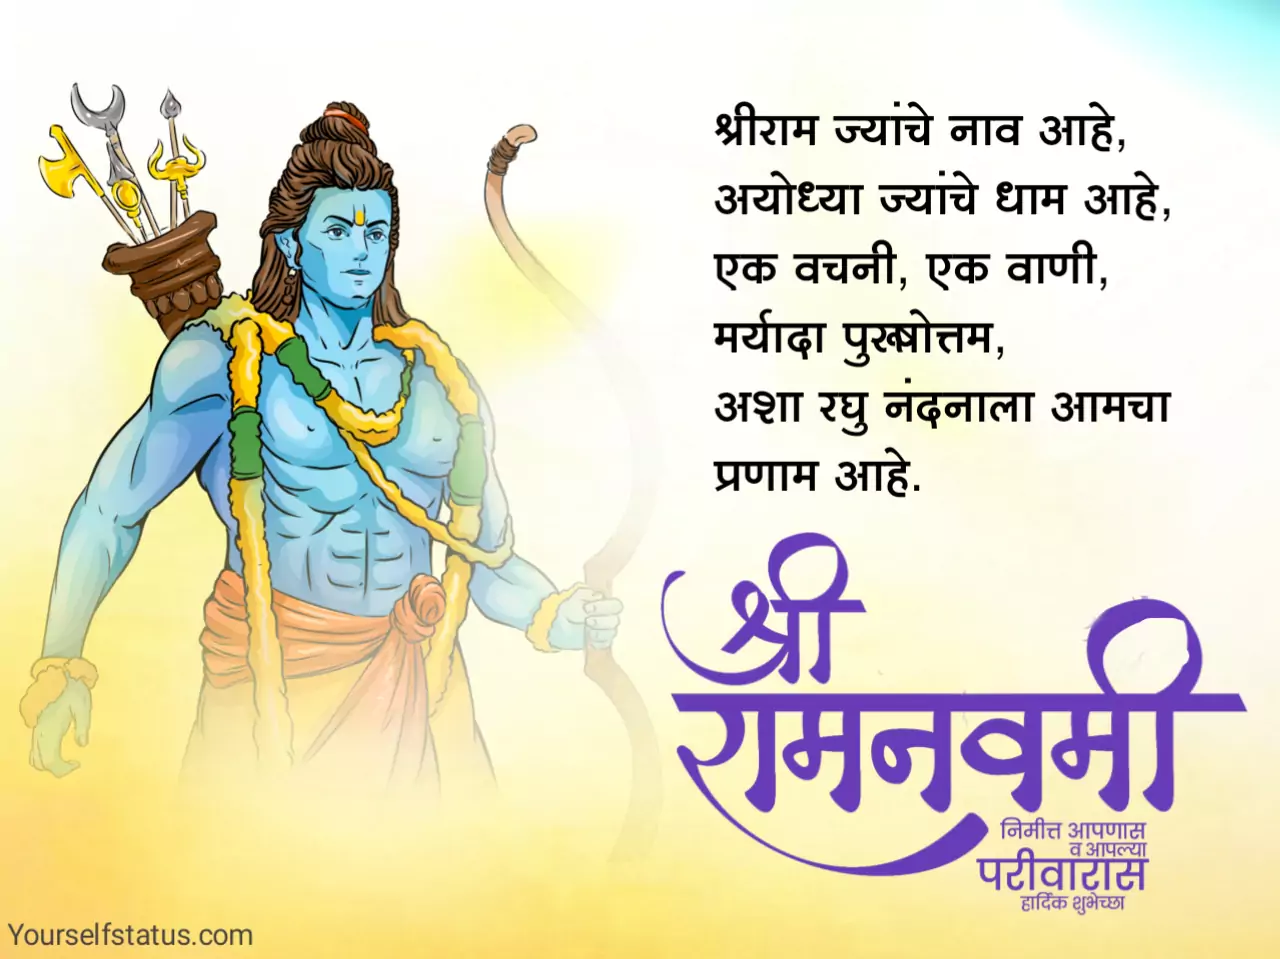 Ram navami wishes in marathi